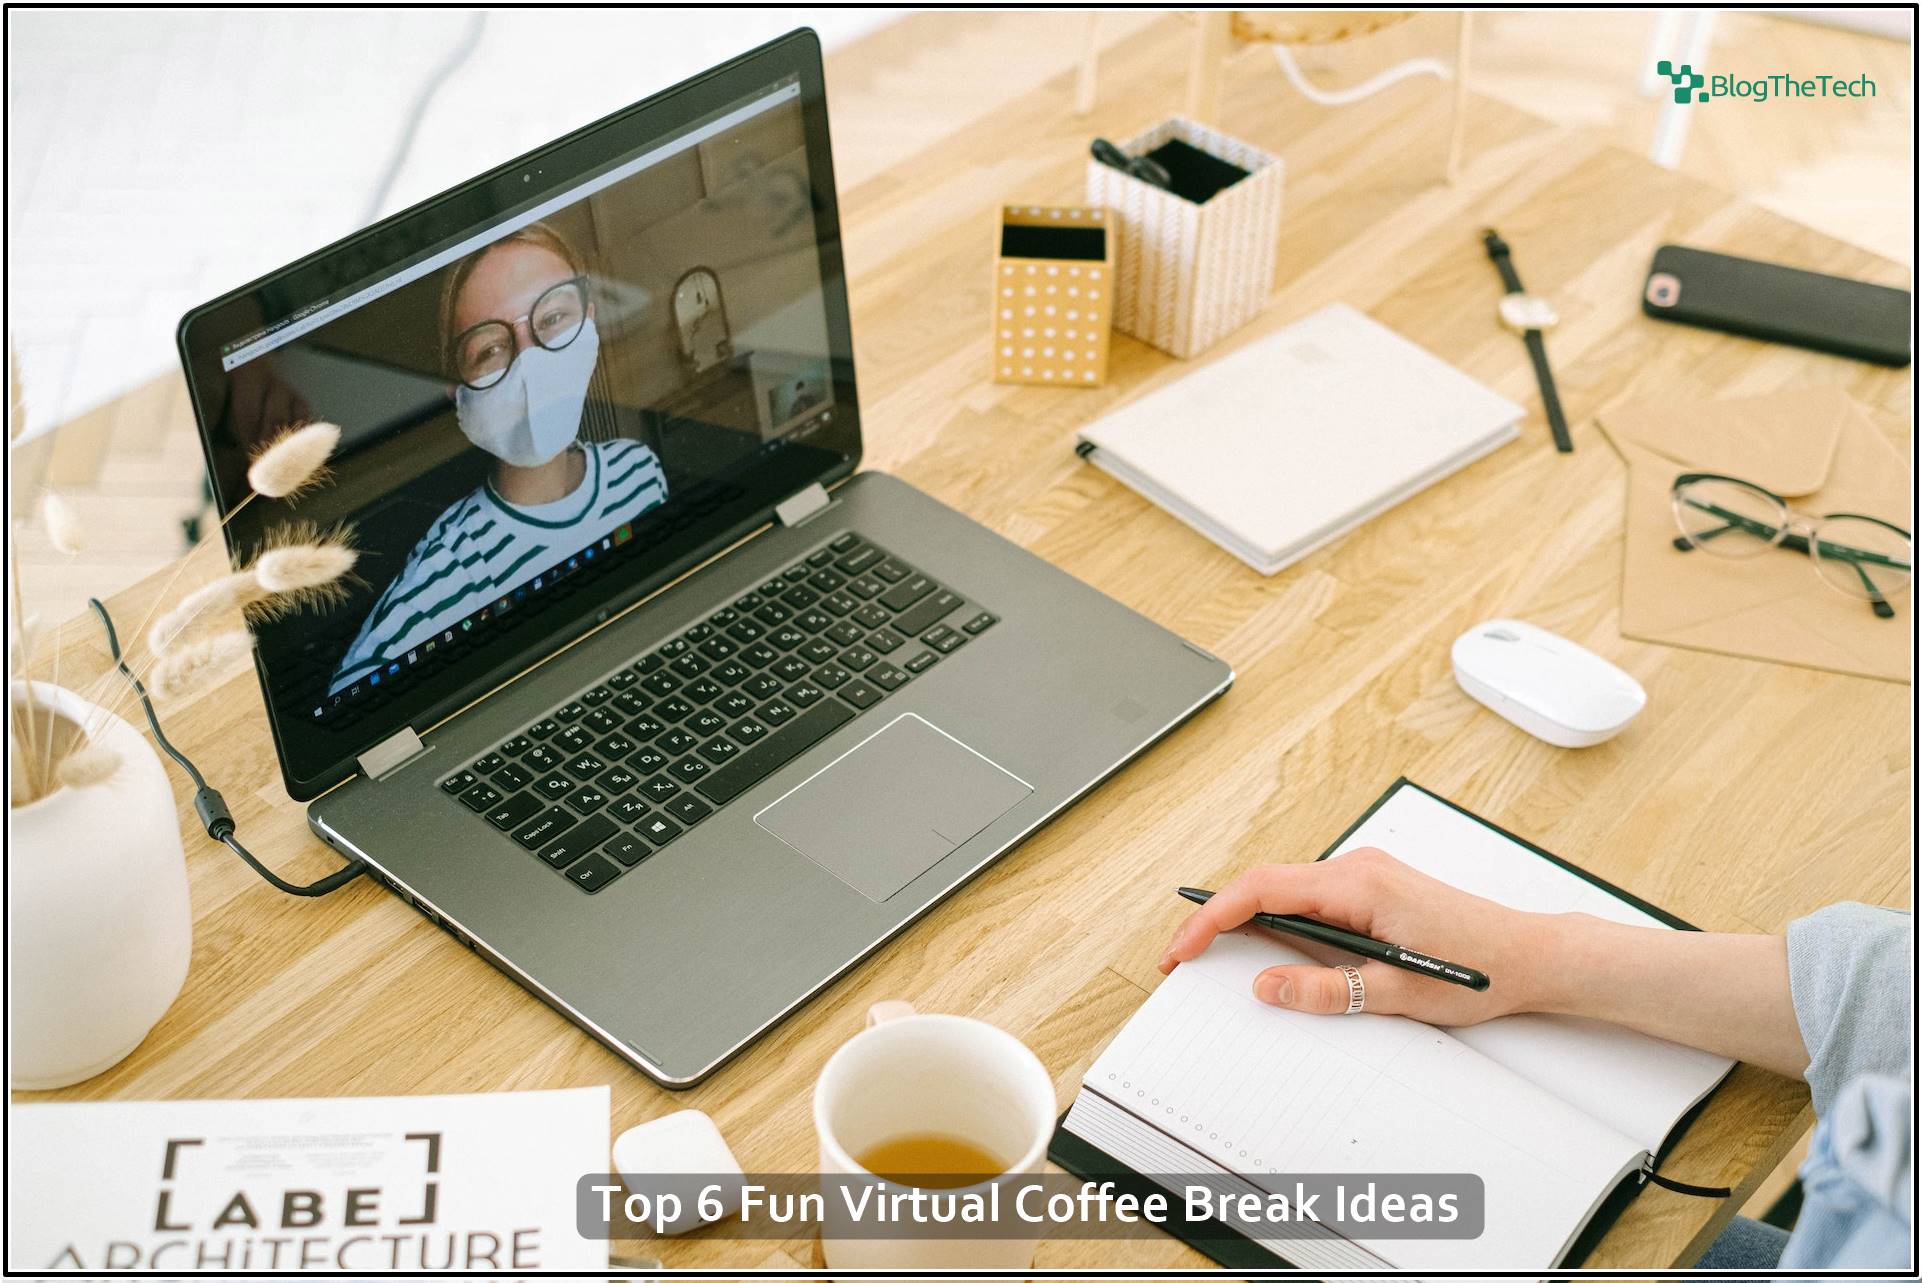 Top 6 Fun Virtual Coffee Break Ideas